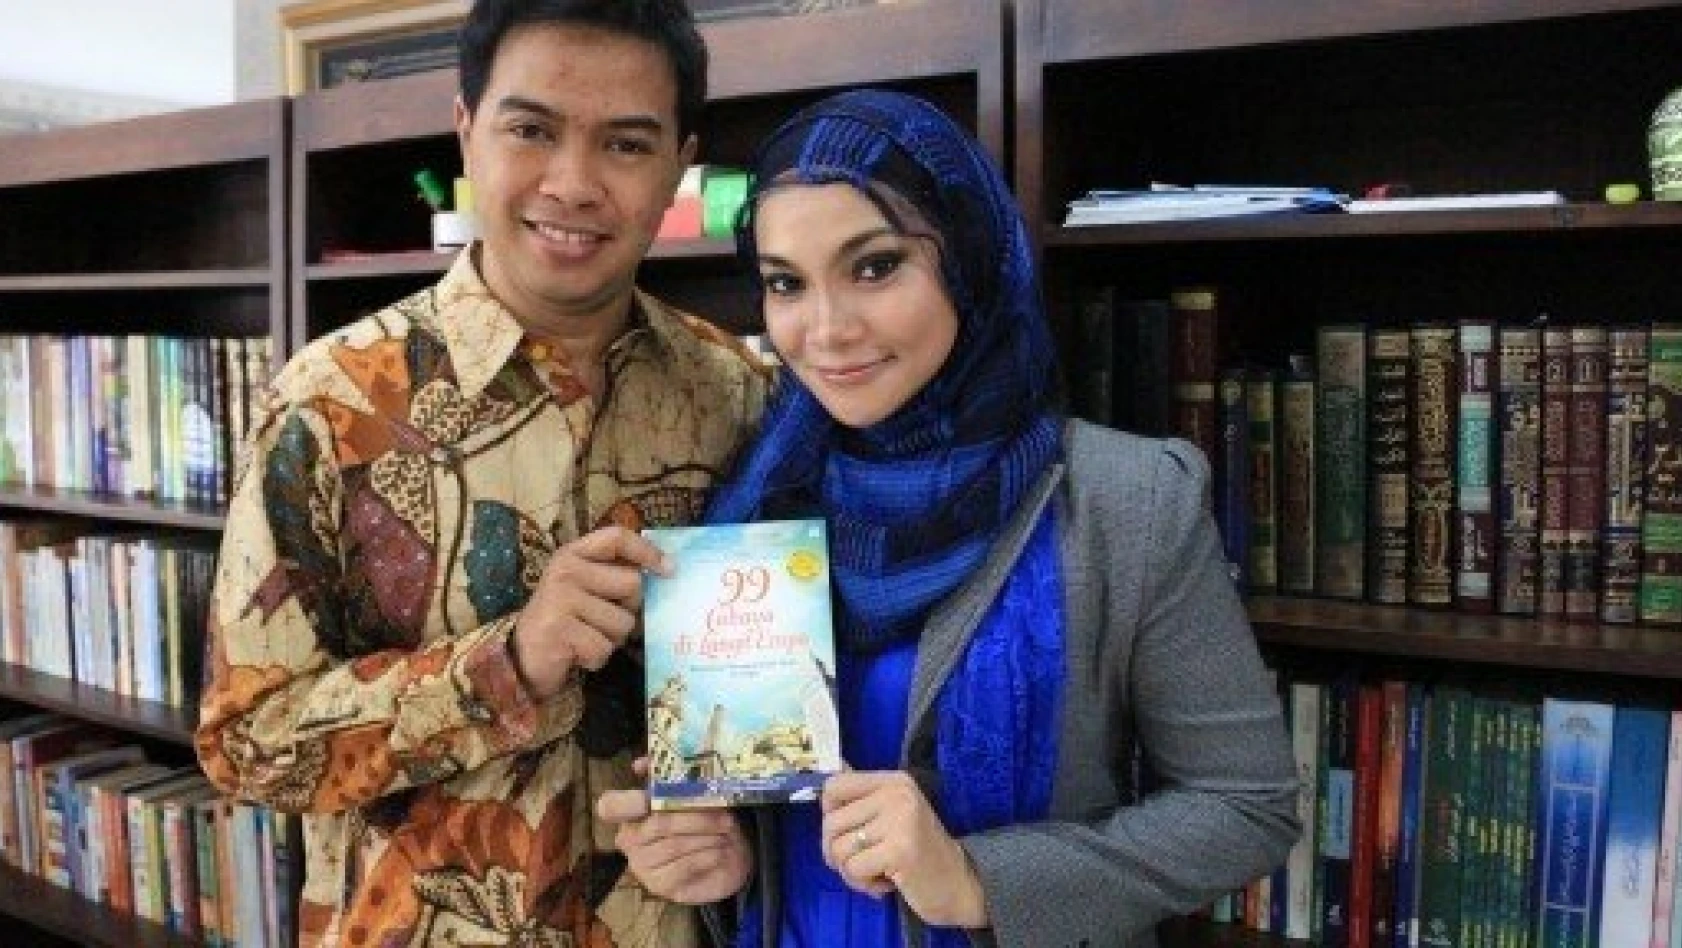 Endonezyalı çift önce İstanbul'un romanını yazdı, şimdi de filmini yapacak